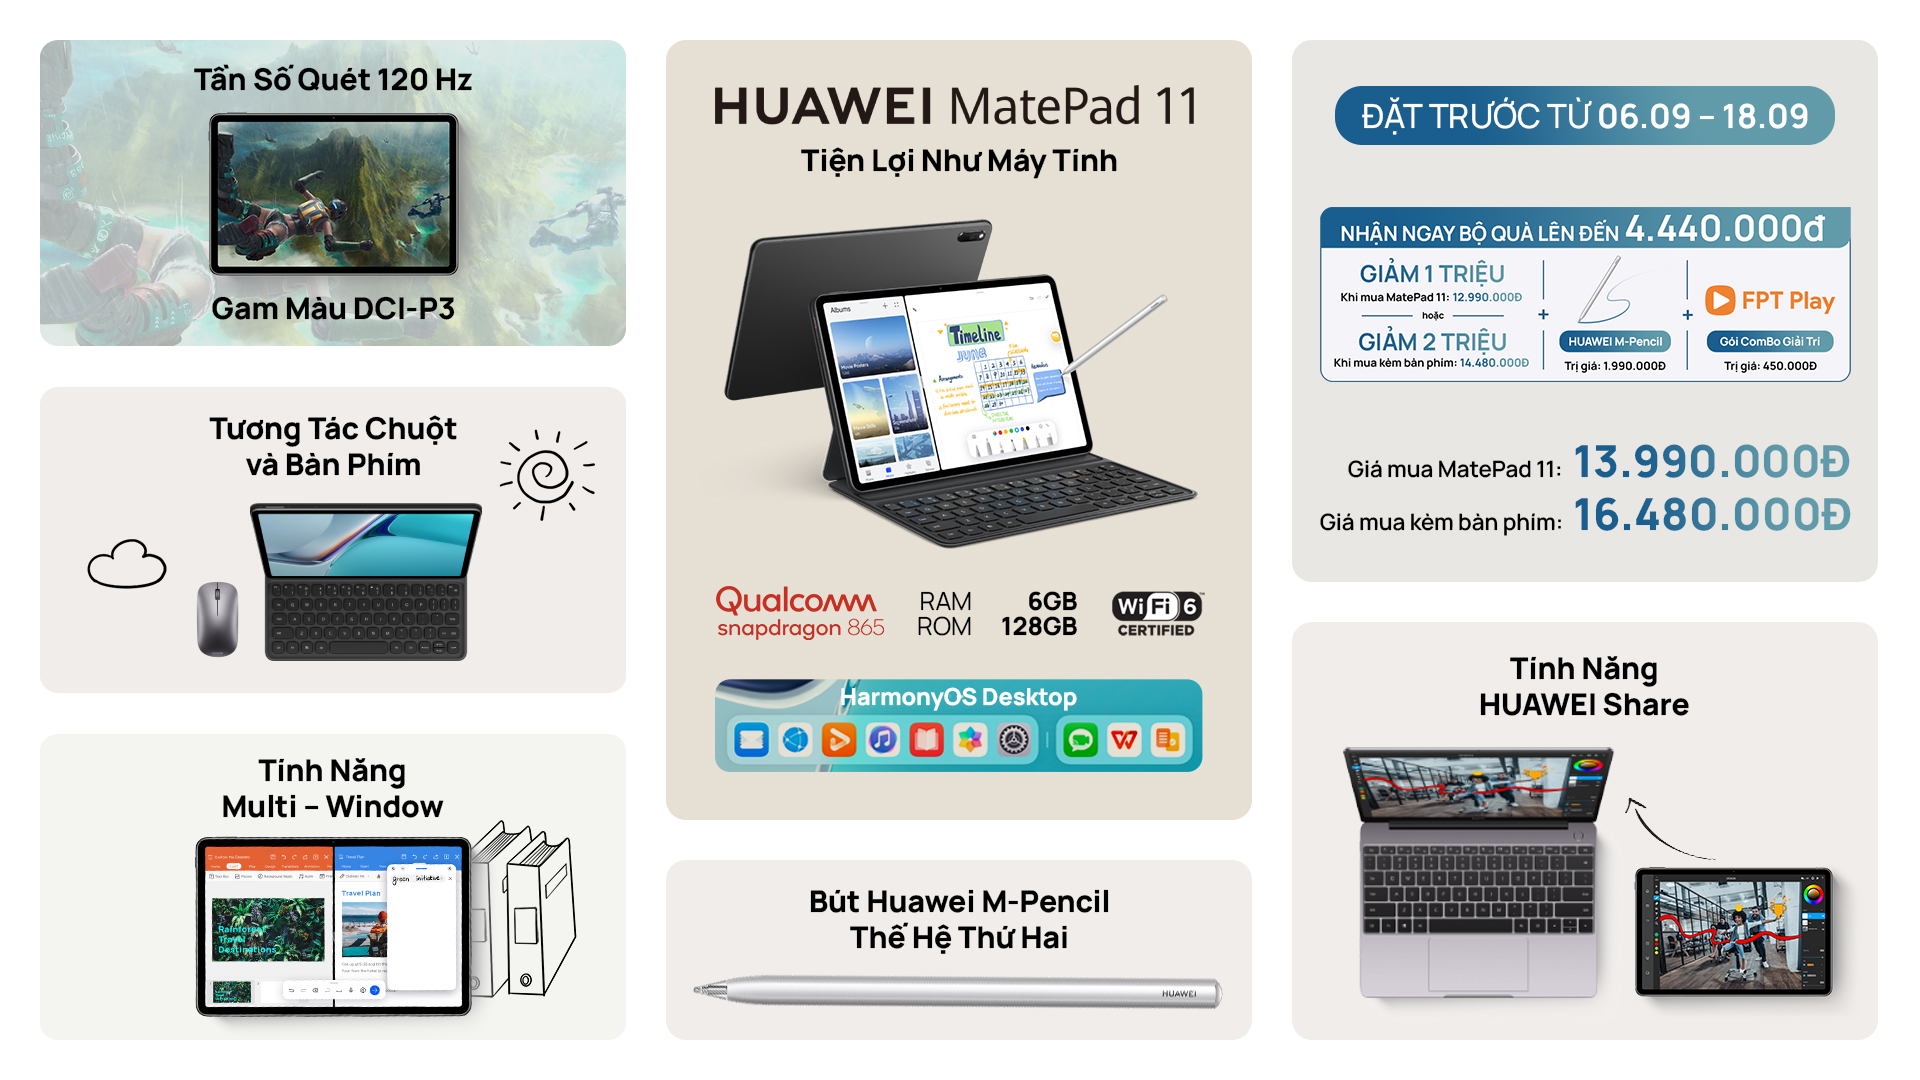 Còn 5 ngày để sở hữu bộ đôi máy tính bảng Huawei MatePad 11 và M-Pencil với nhiều ưu đãi hấp dẫn